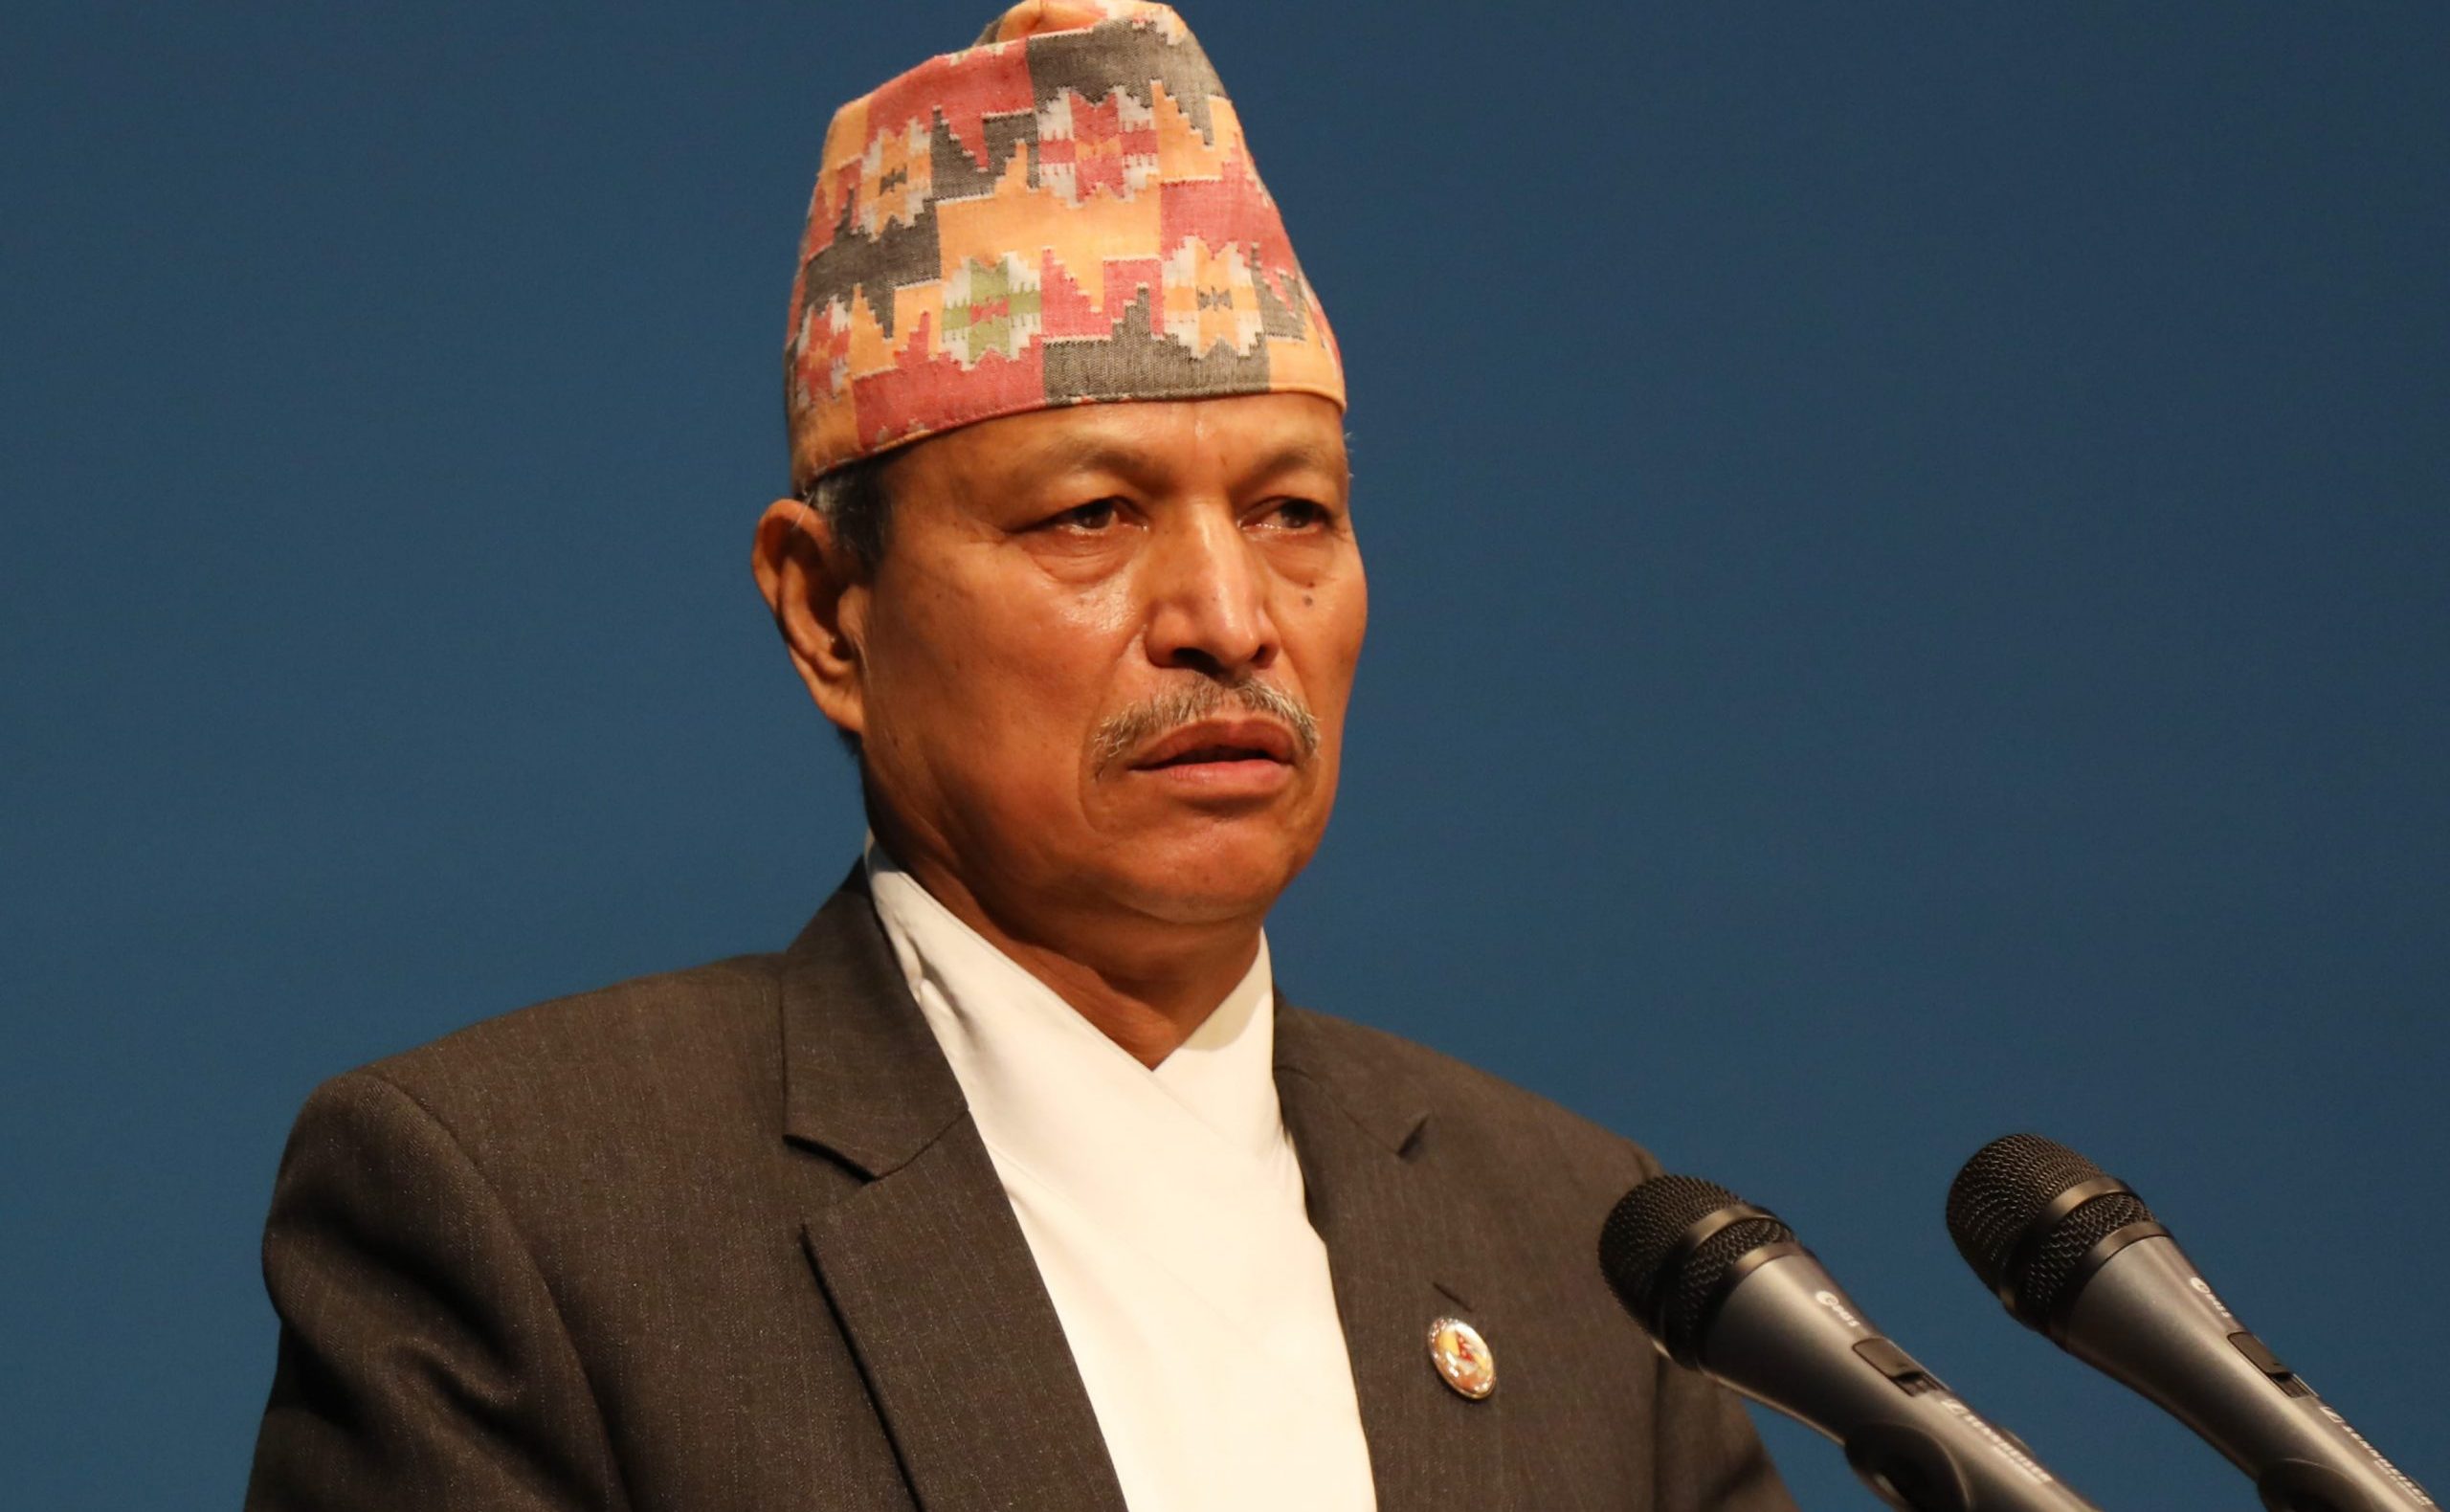 नक्कली भूटानी शरणार्थी मुद्दामा प्रहरीलाई दवाव दिनु देशप्रतिको गद्दारी हो: नेता भीम रावल